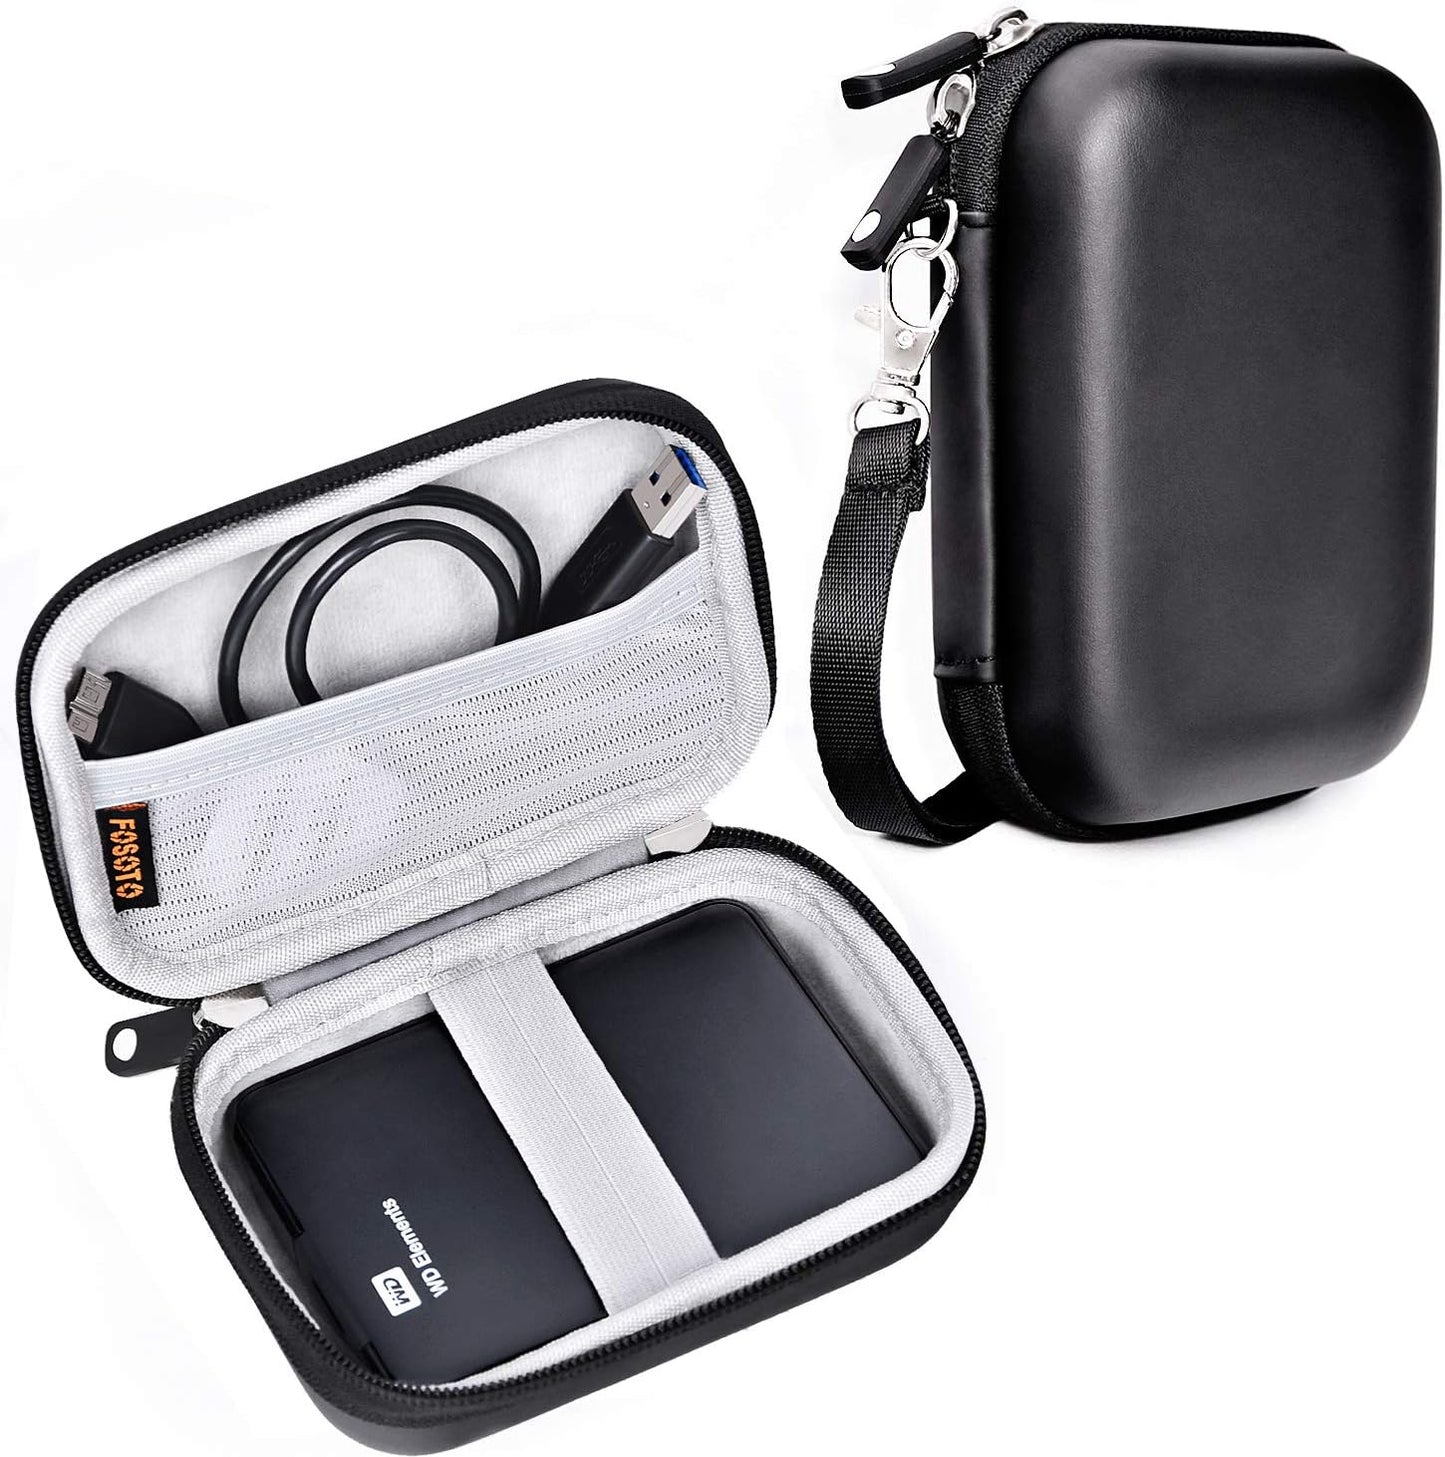 Shockproof Compact Digital Camera Case Bag